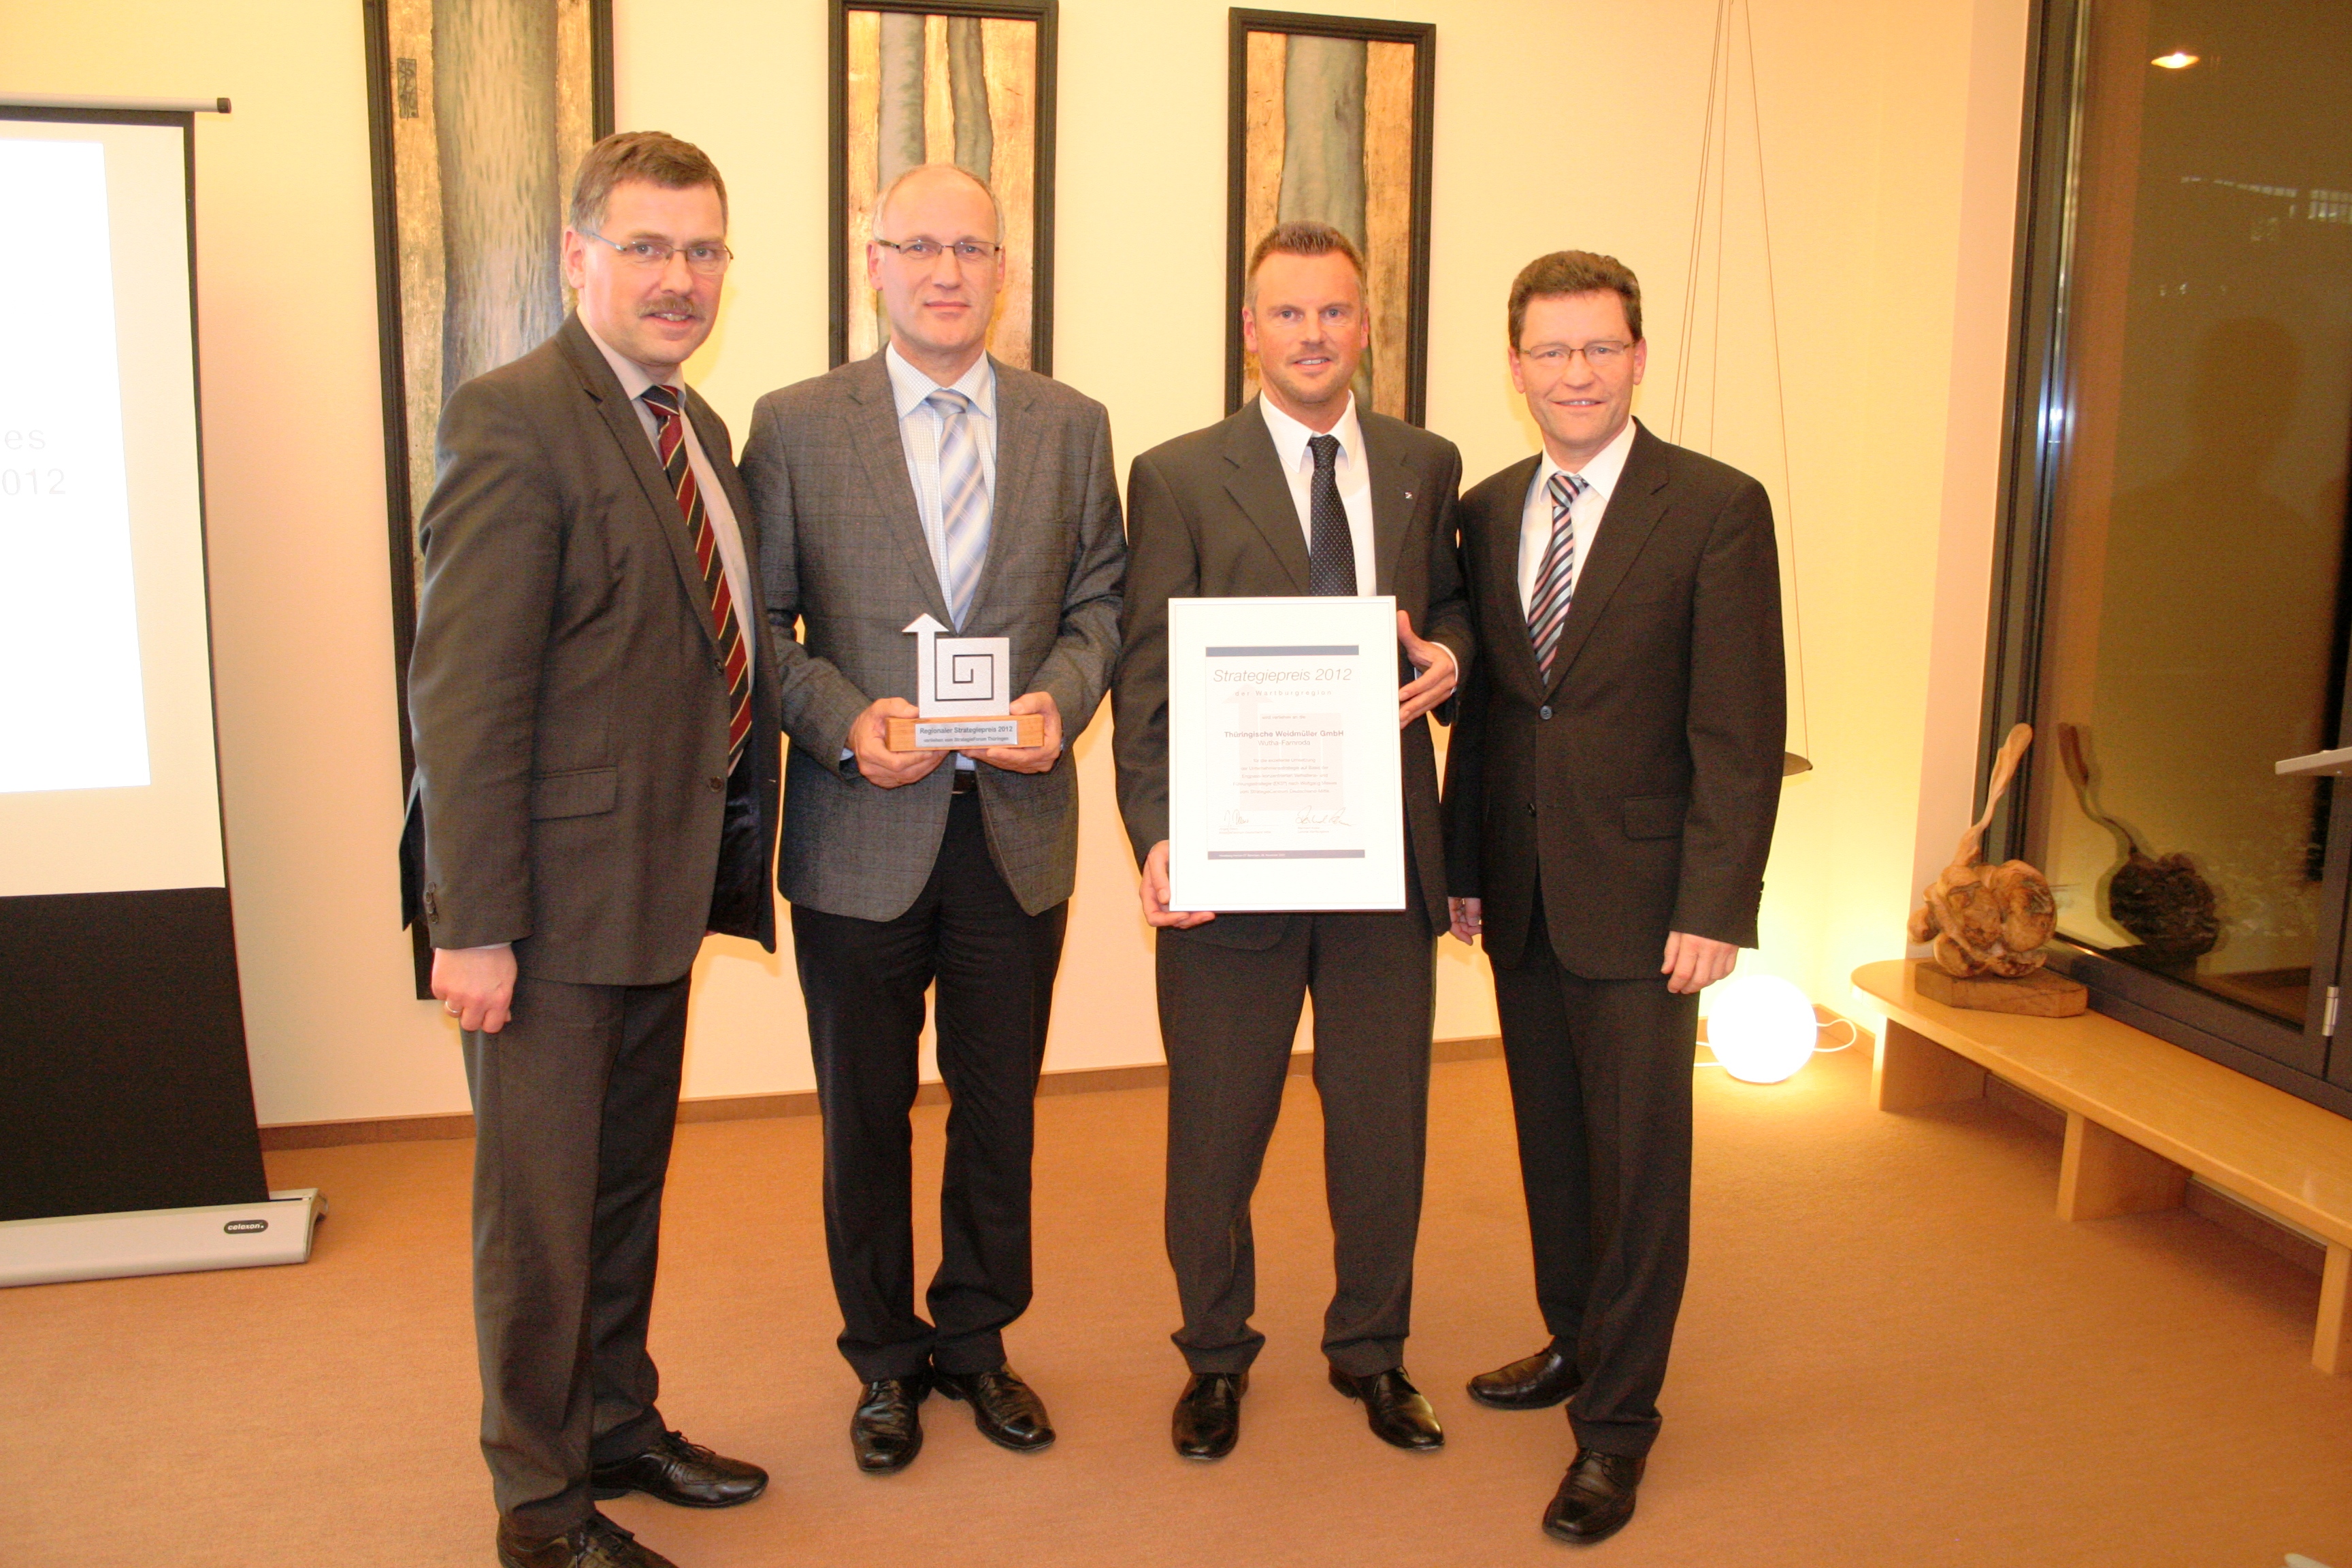 Strategiepreis 2012 der Wartburgregion verliehen